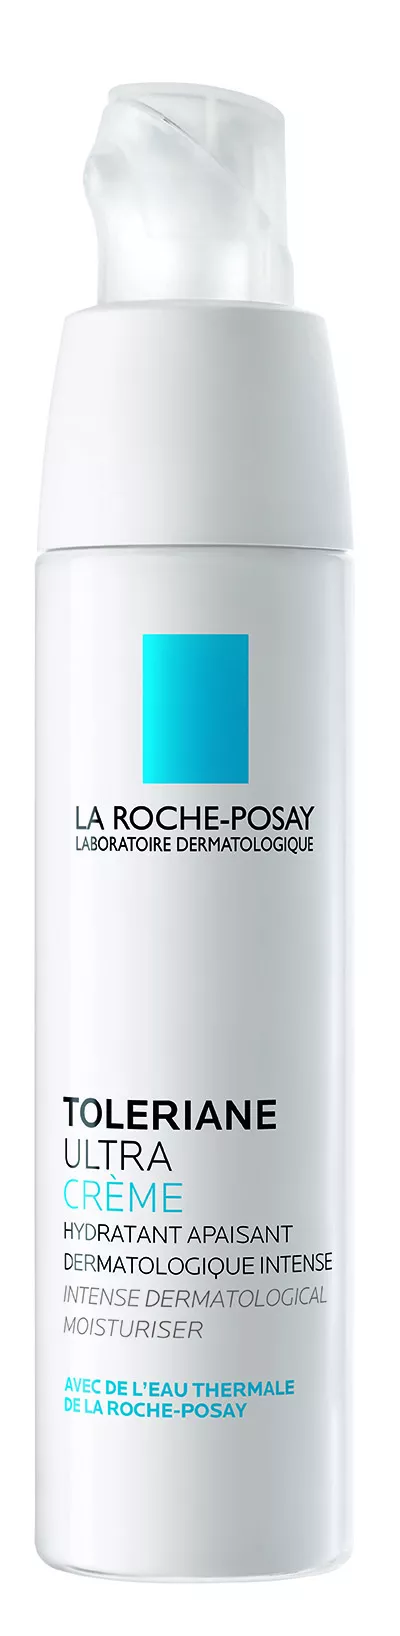 LA ROCHE-POSAY Toleriane Ultra crema x 40ml, [],remediumfarm.ro